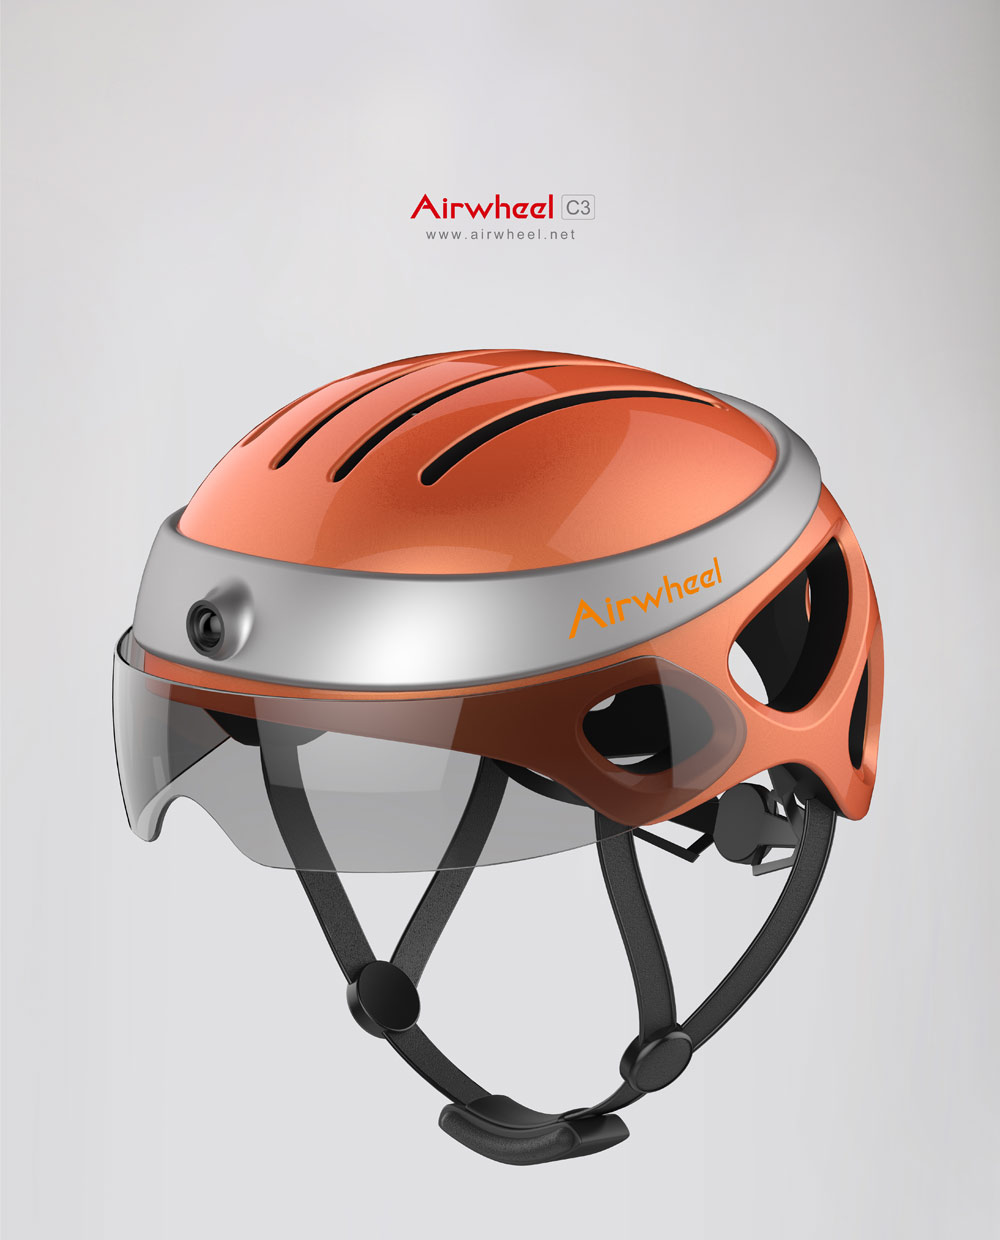 airwheel c3 best motorcycle helmet